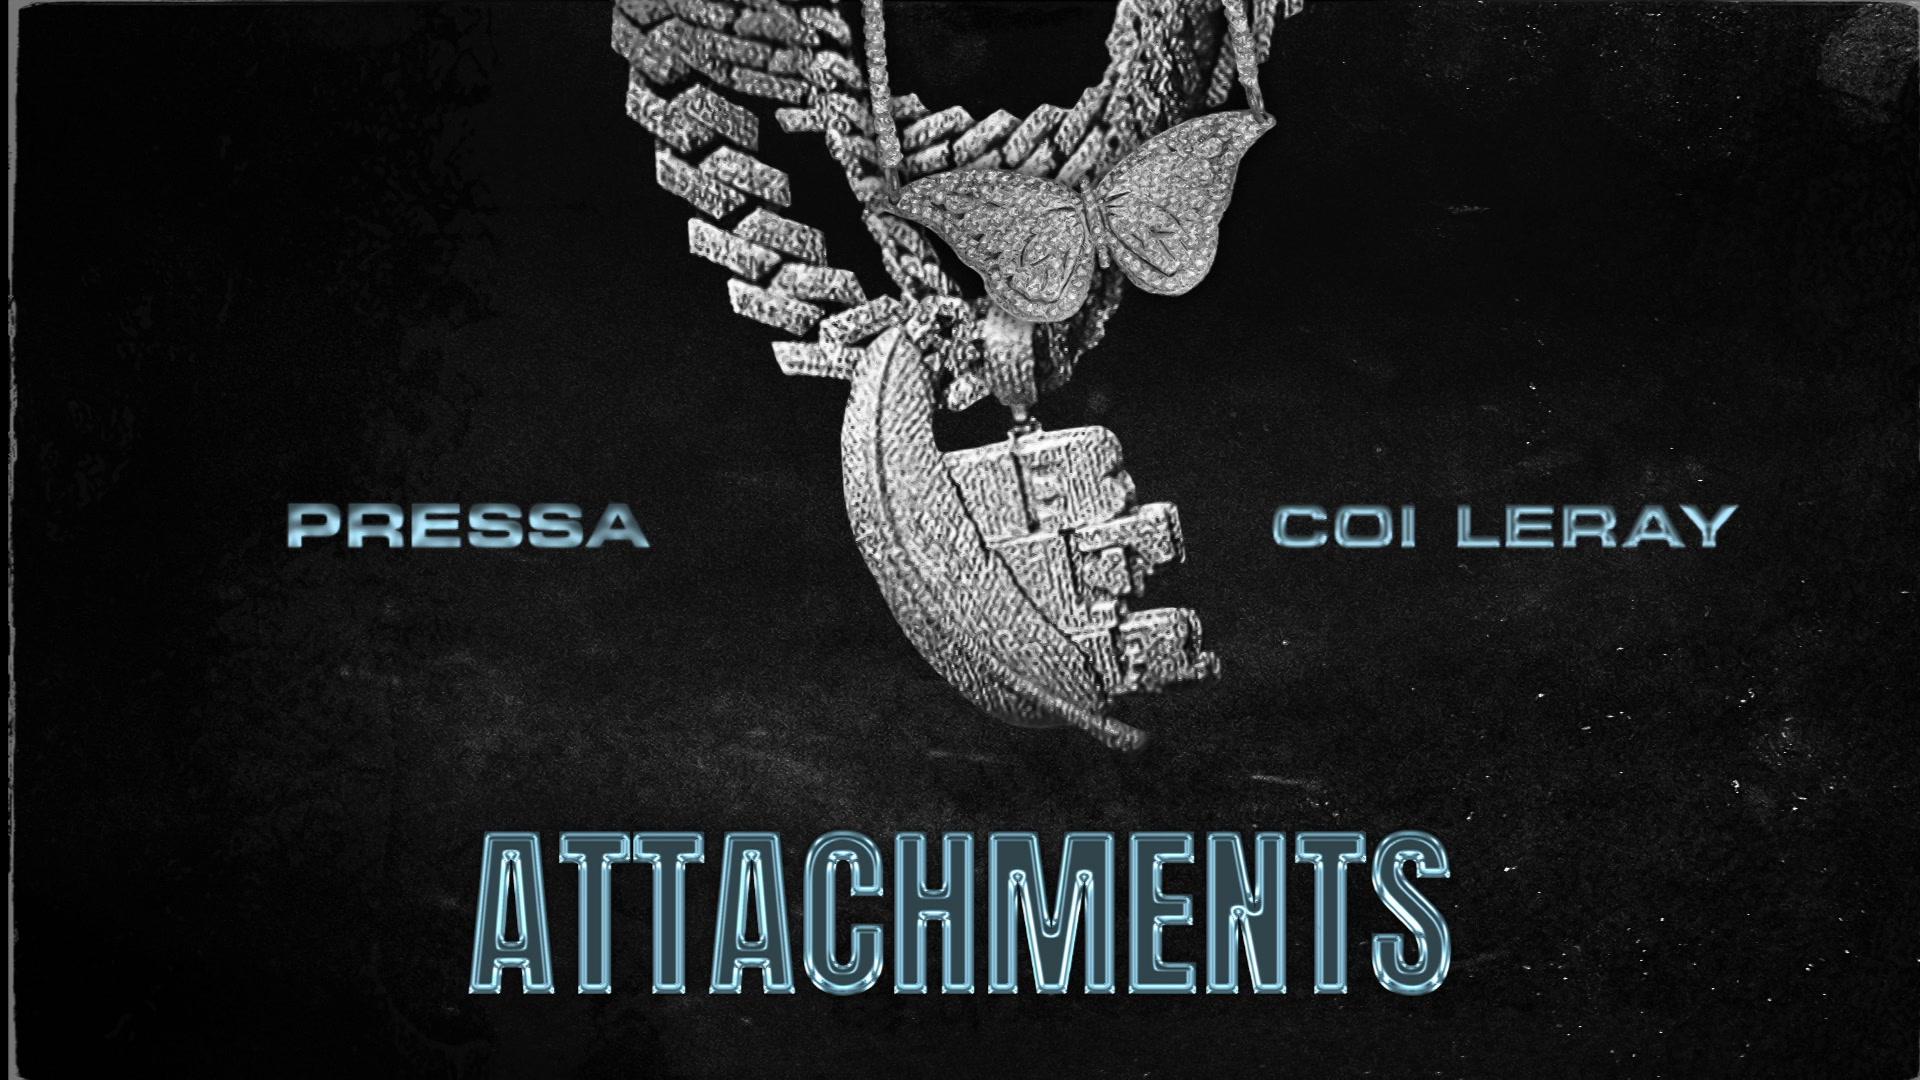 Pressa - Attachments (Official Audio)